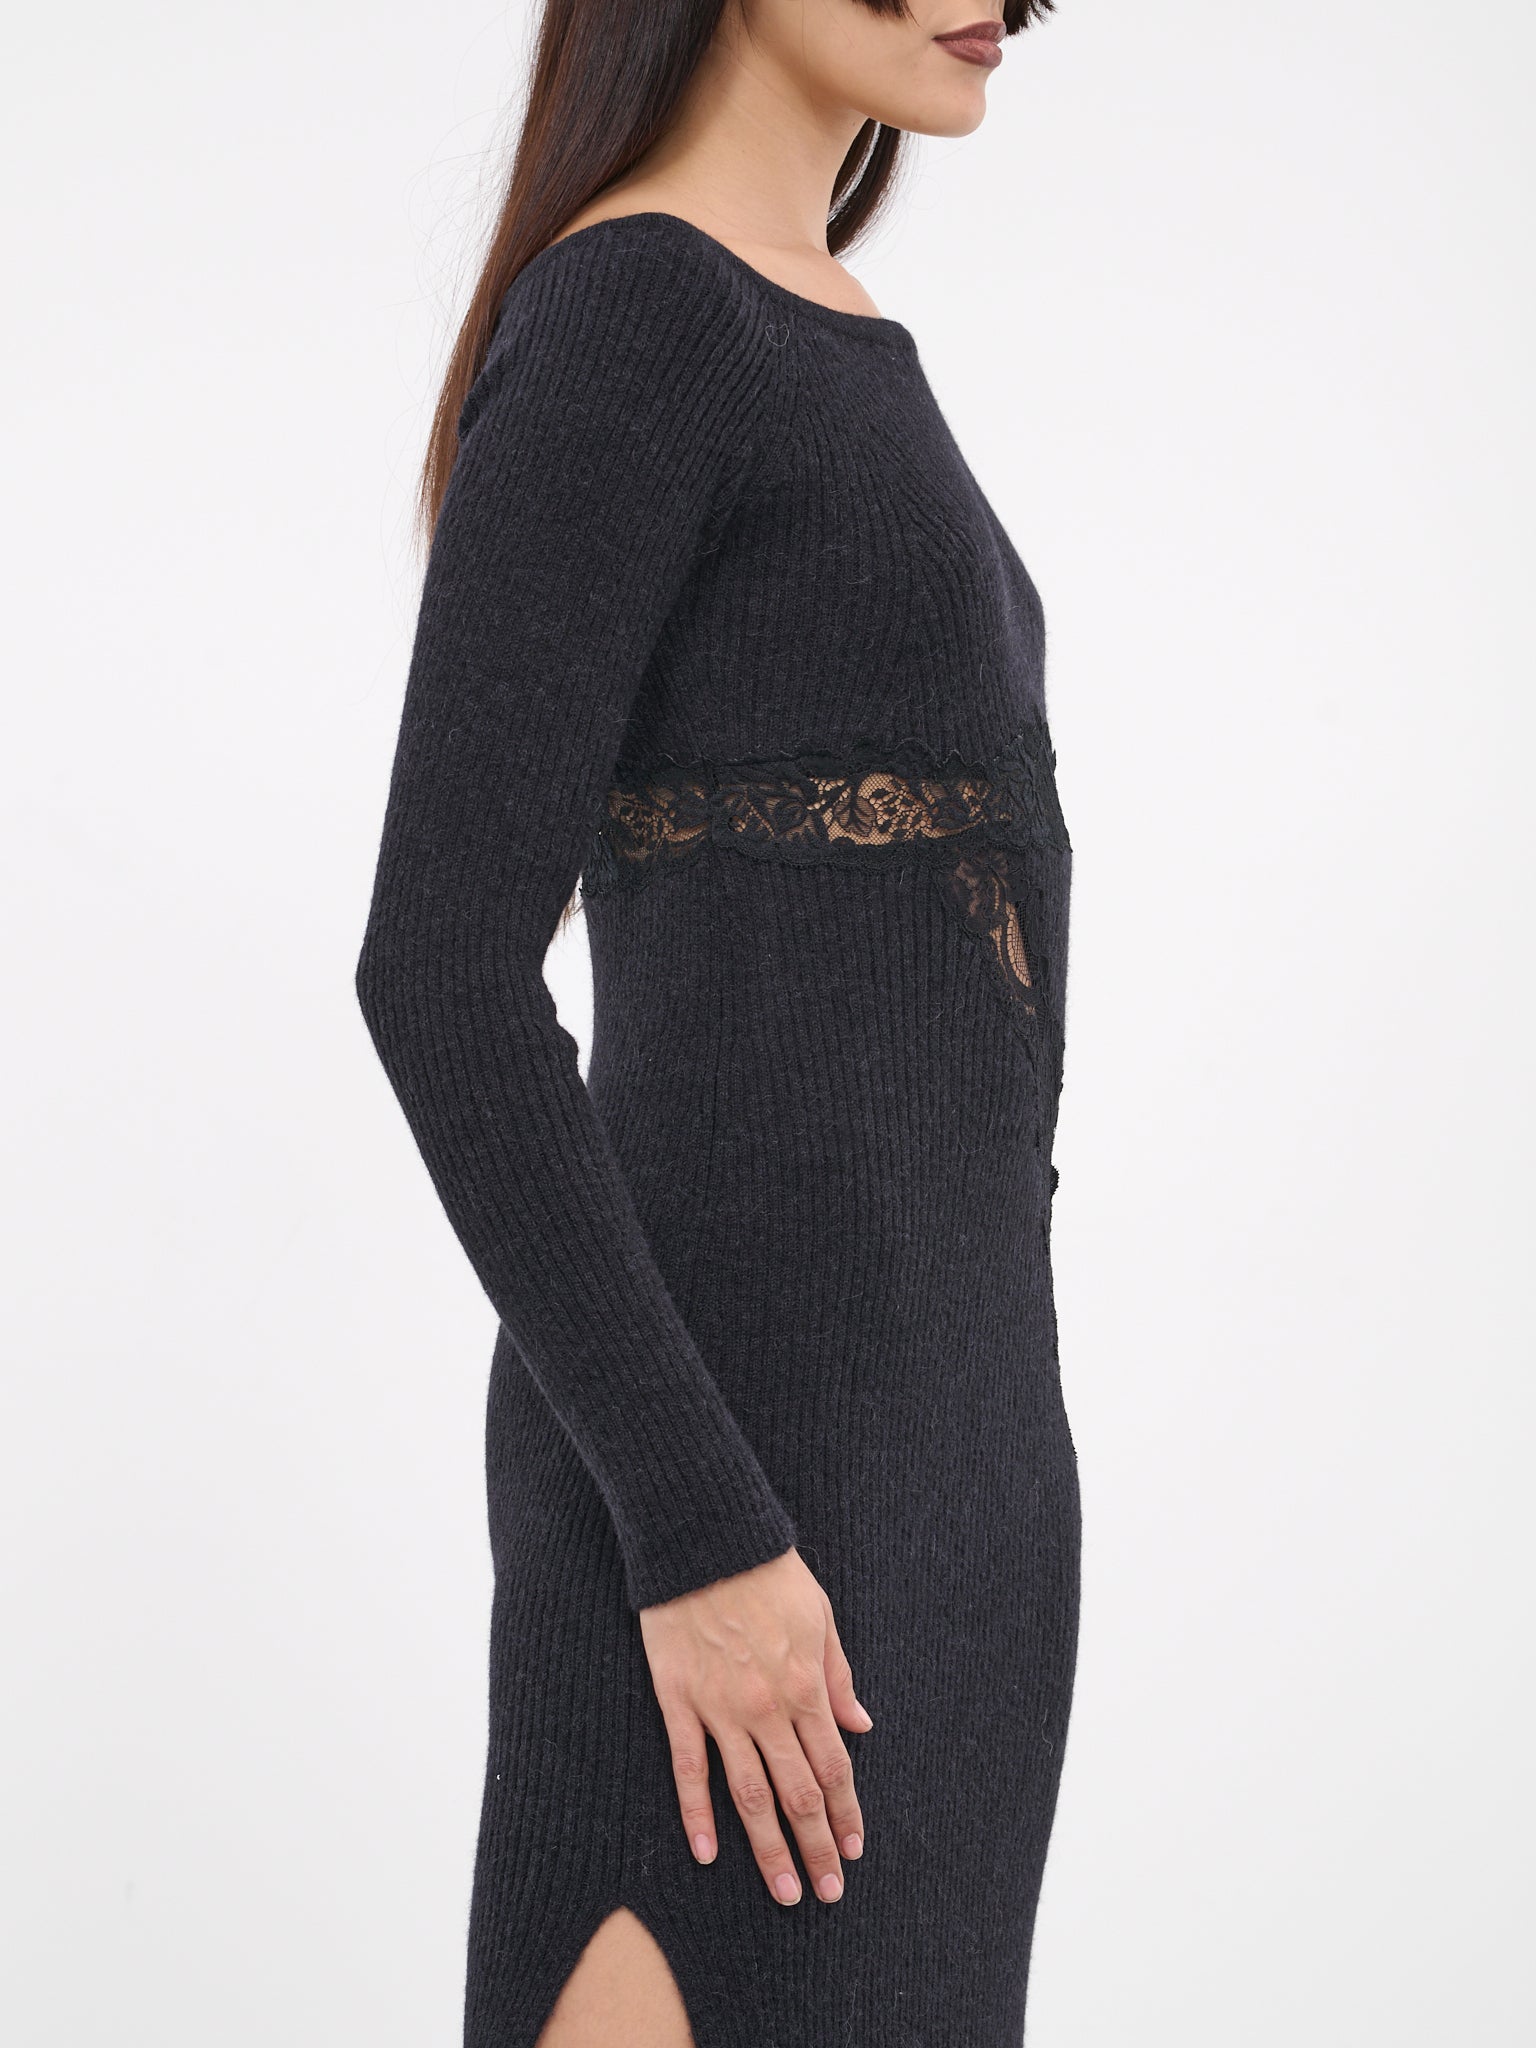 Lace Rib-Knit Dress (KN008-BLACK)